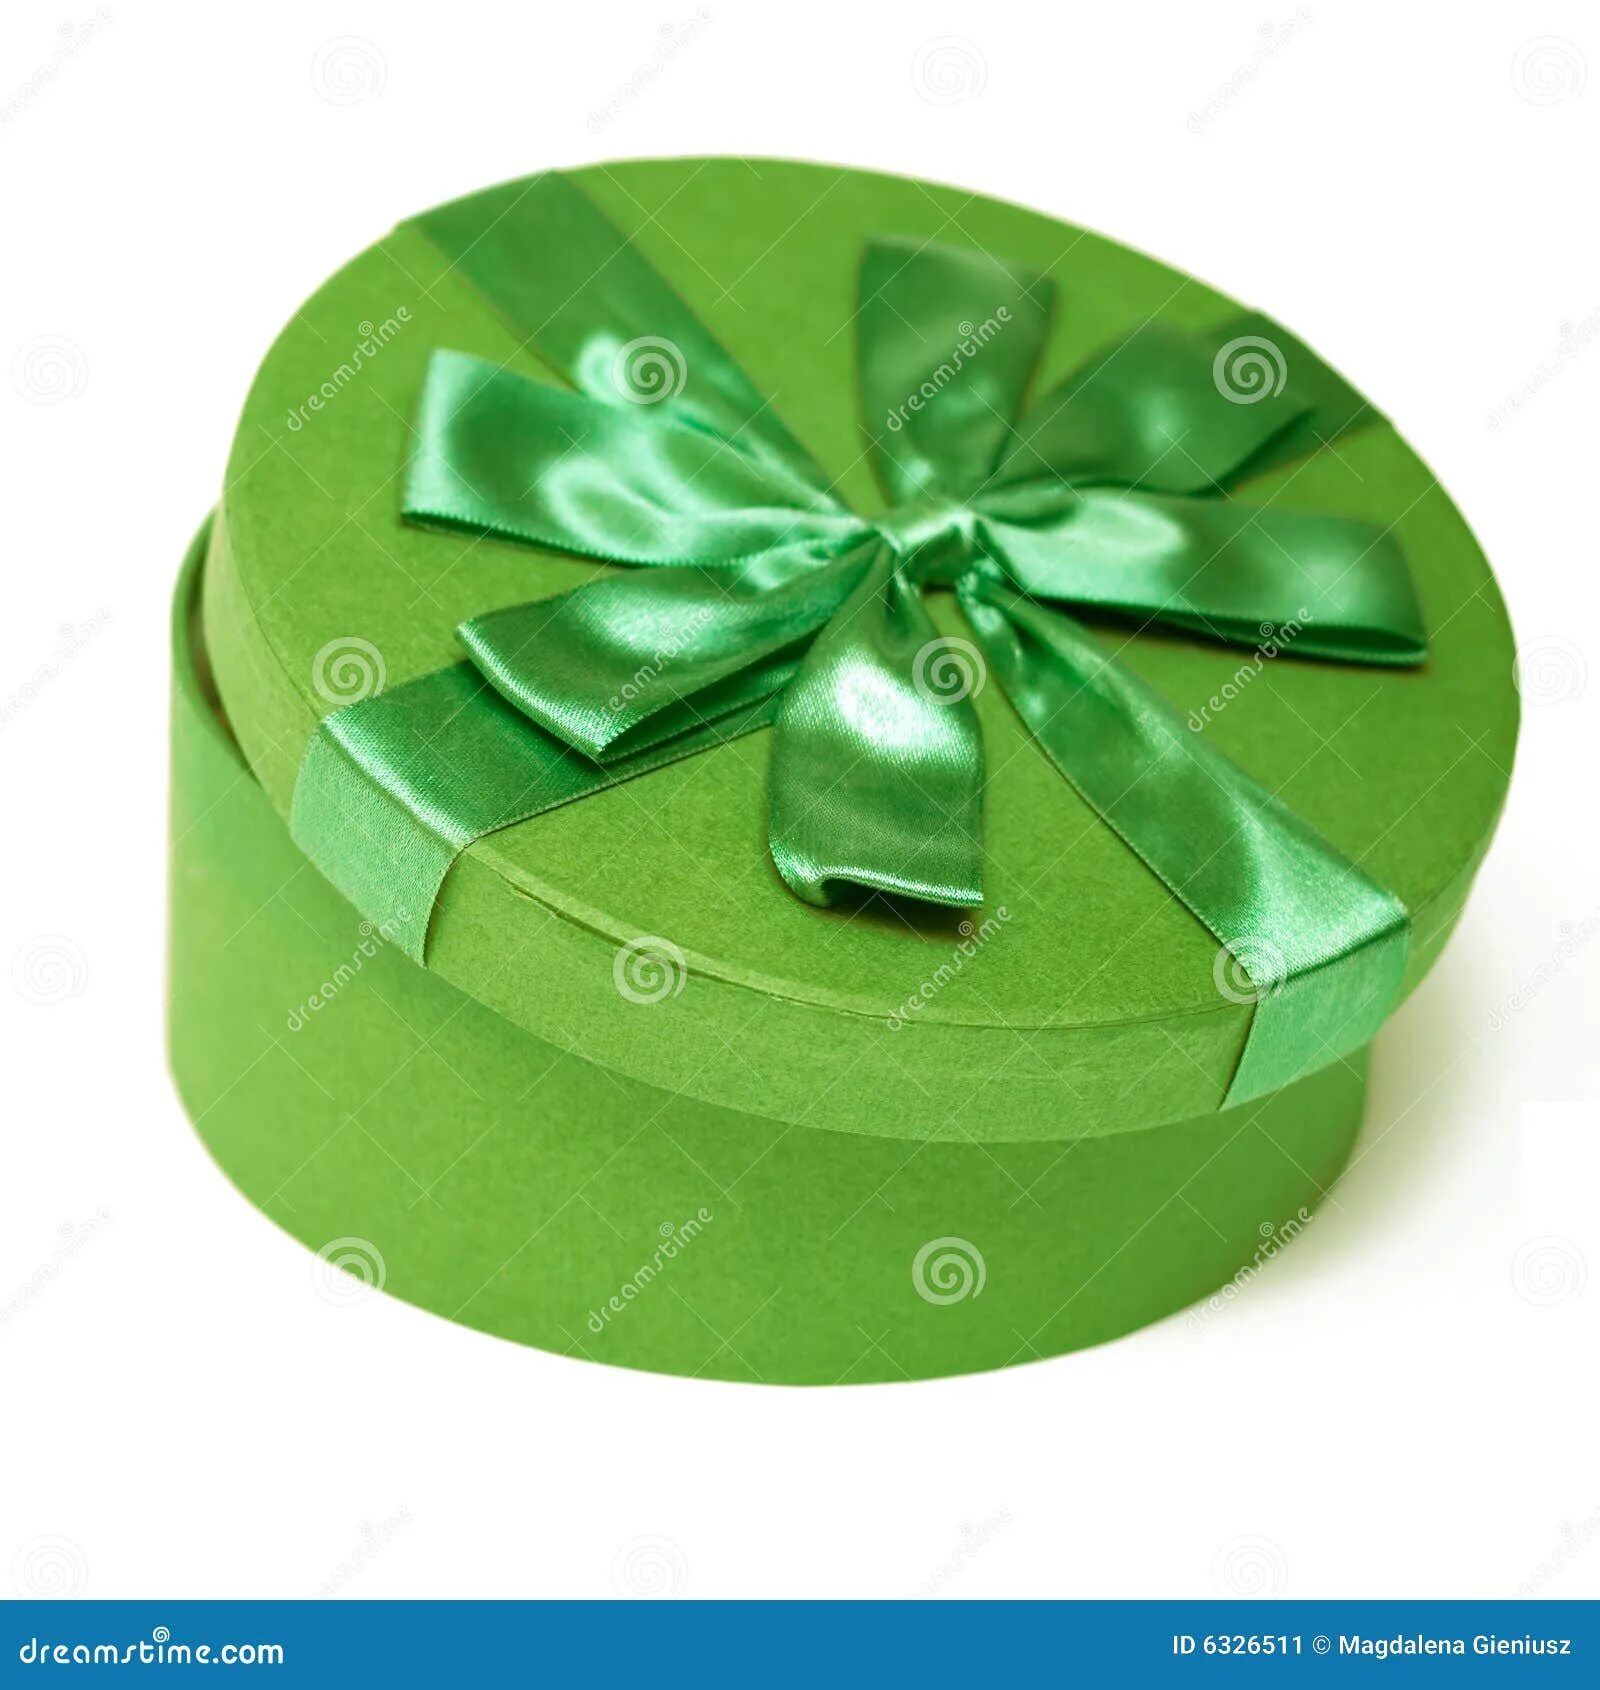 Зеленые подарочные коробки. Подарочная коробка зеленого цвета. Круглая салатовая коробочка. Зеленая коробочка для украшений. Купить зеленую коробку